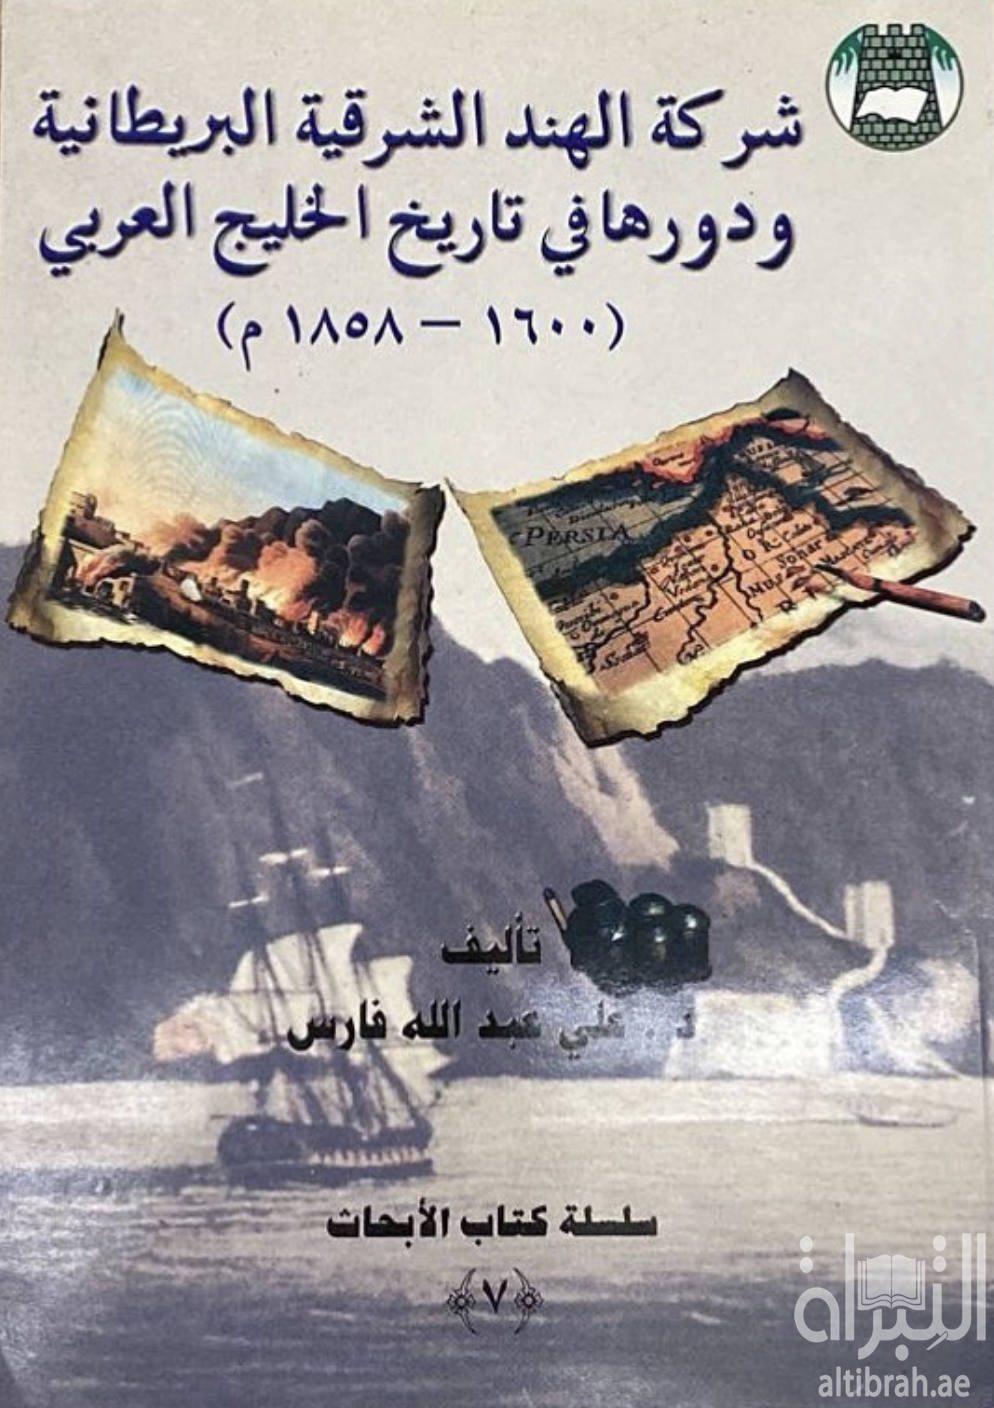 شركة الهند الشرقية البريطانية و دورها في تاريخ الخليج العربي 1600-1858م